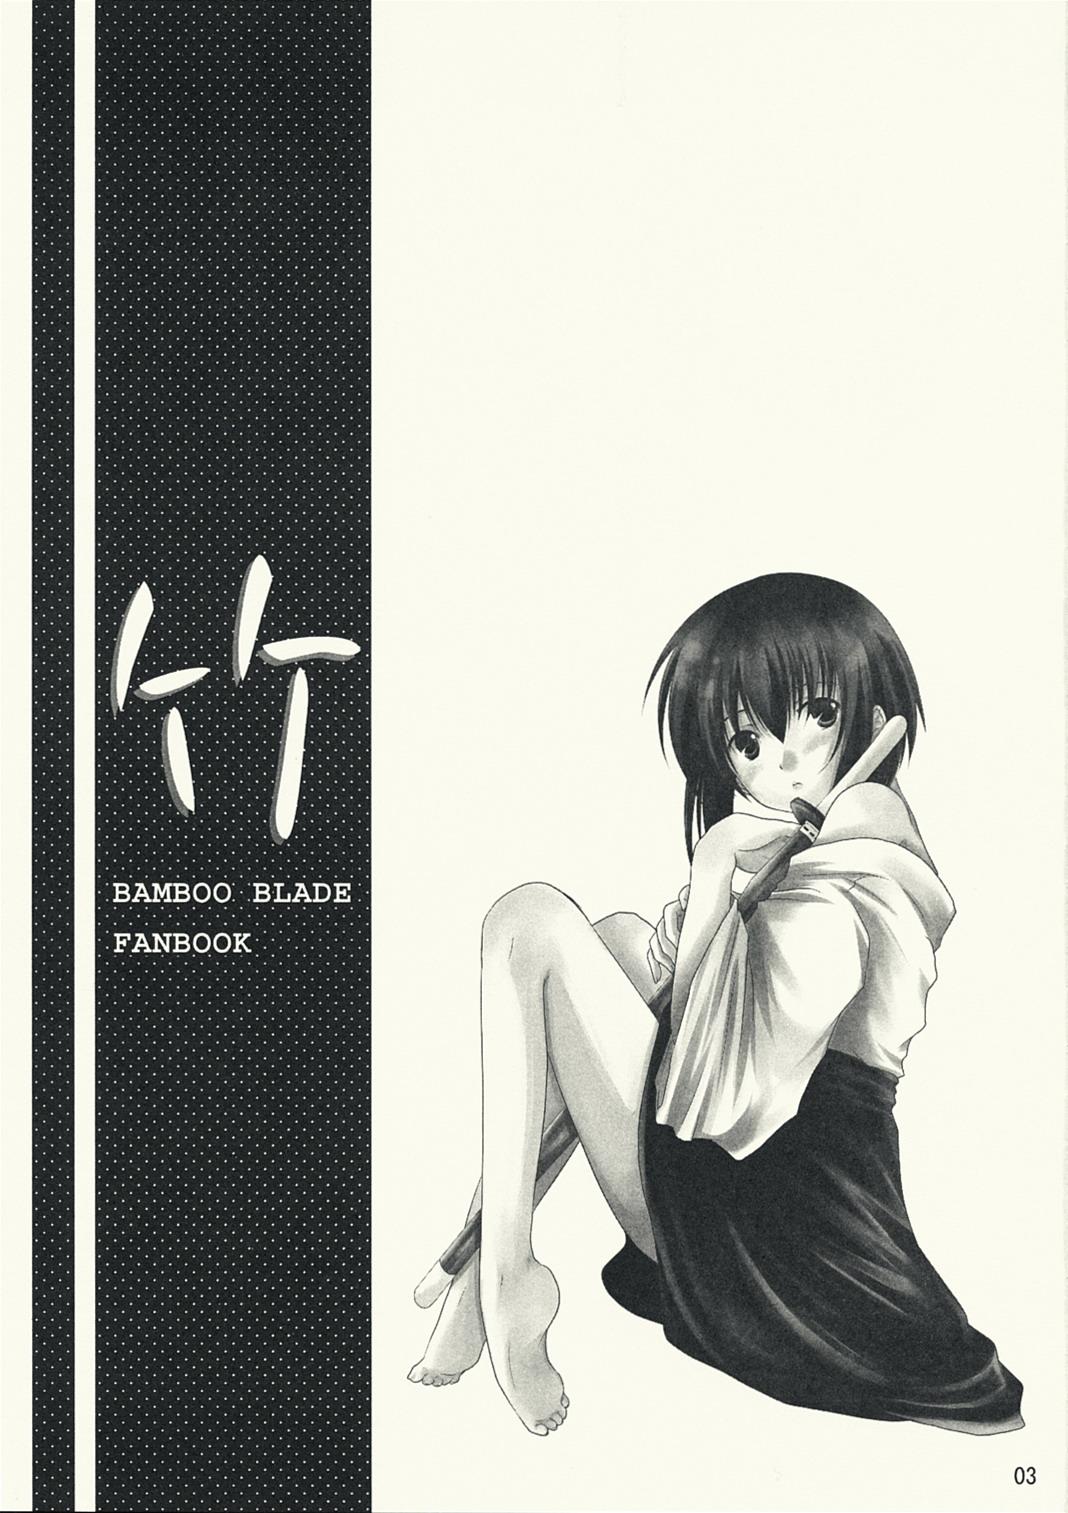 Japan Take - Bamboo blade Ass - Page 3